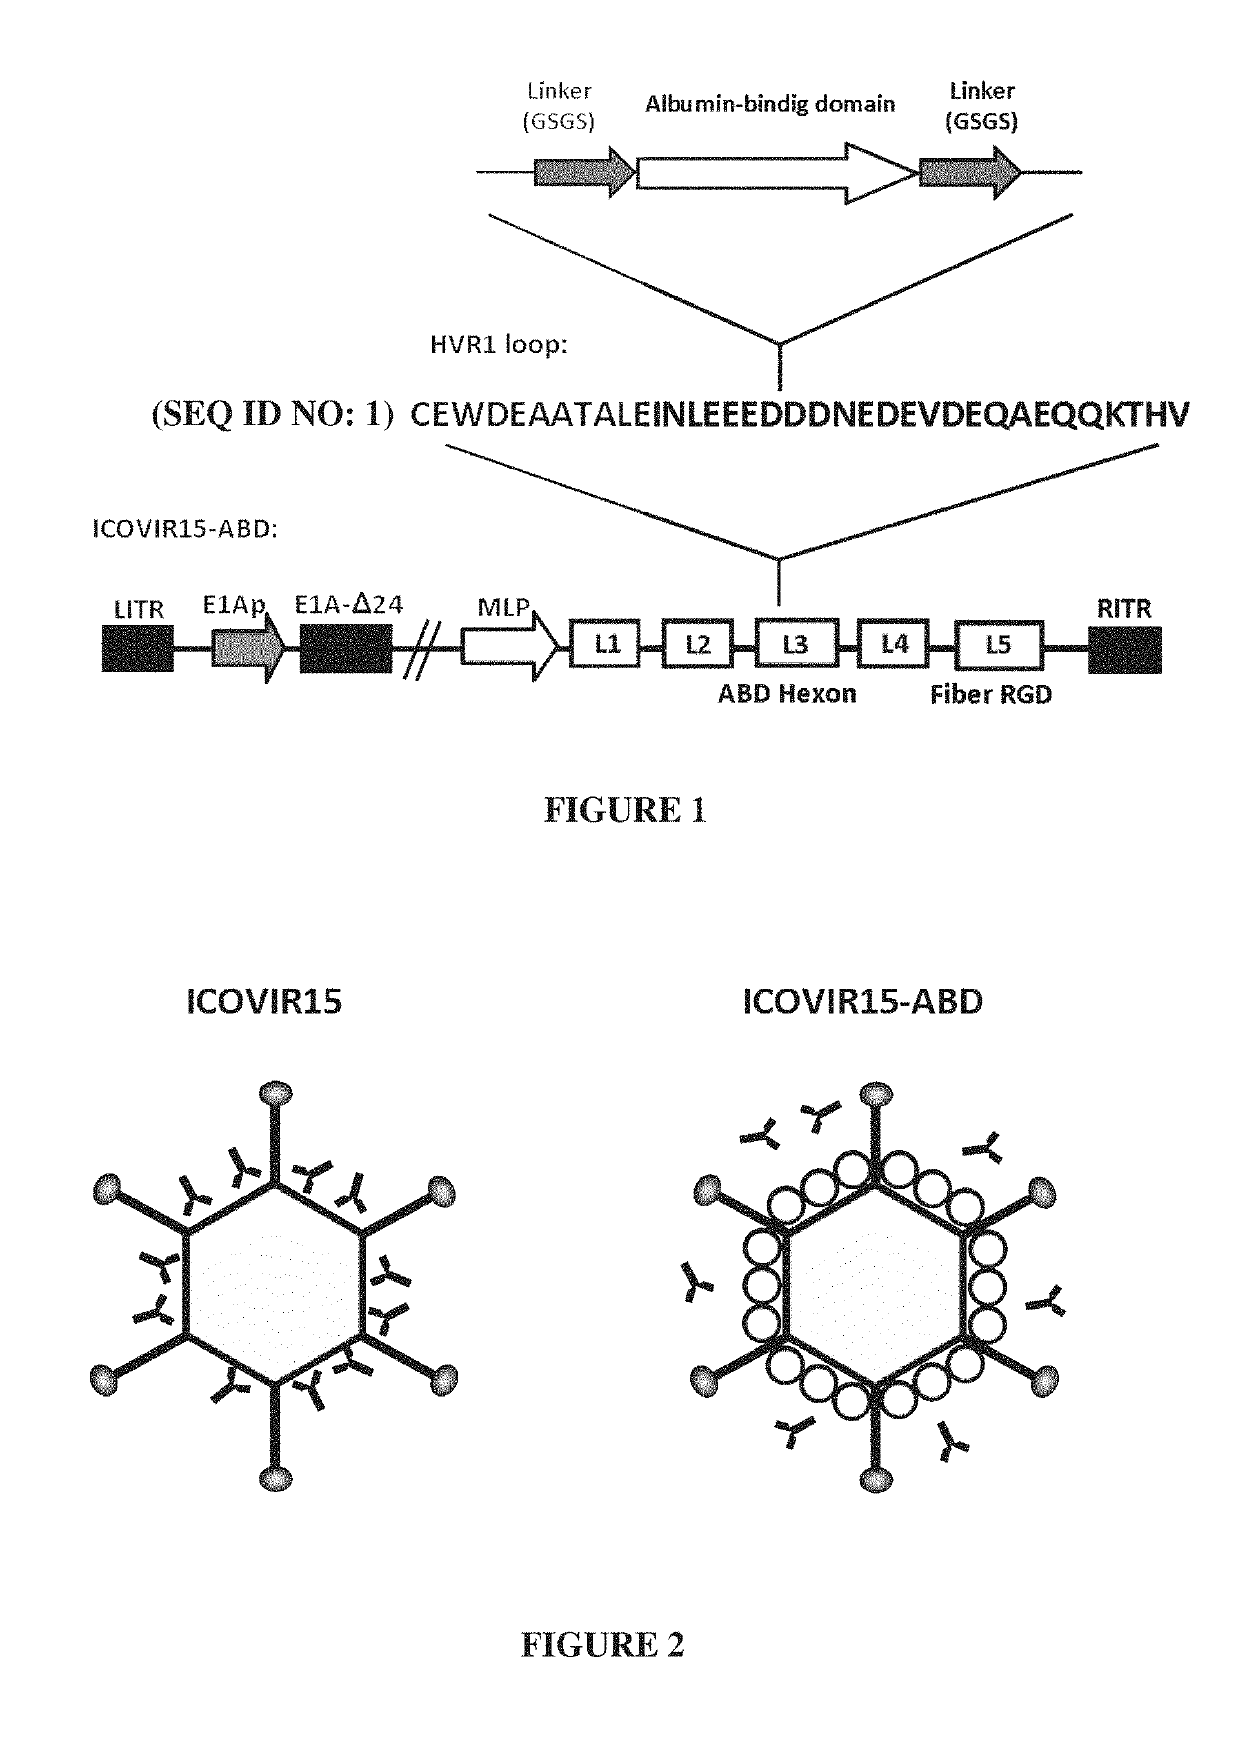 Adenovirus comprising an albumin-binding moiety